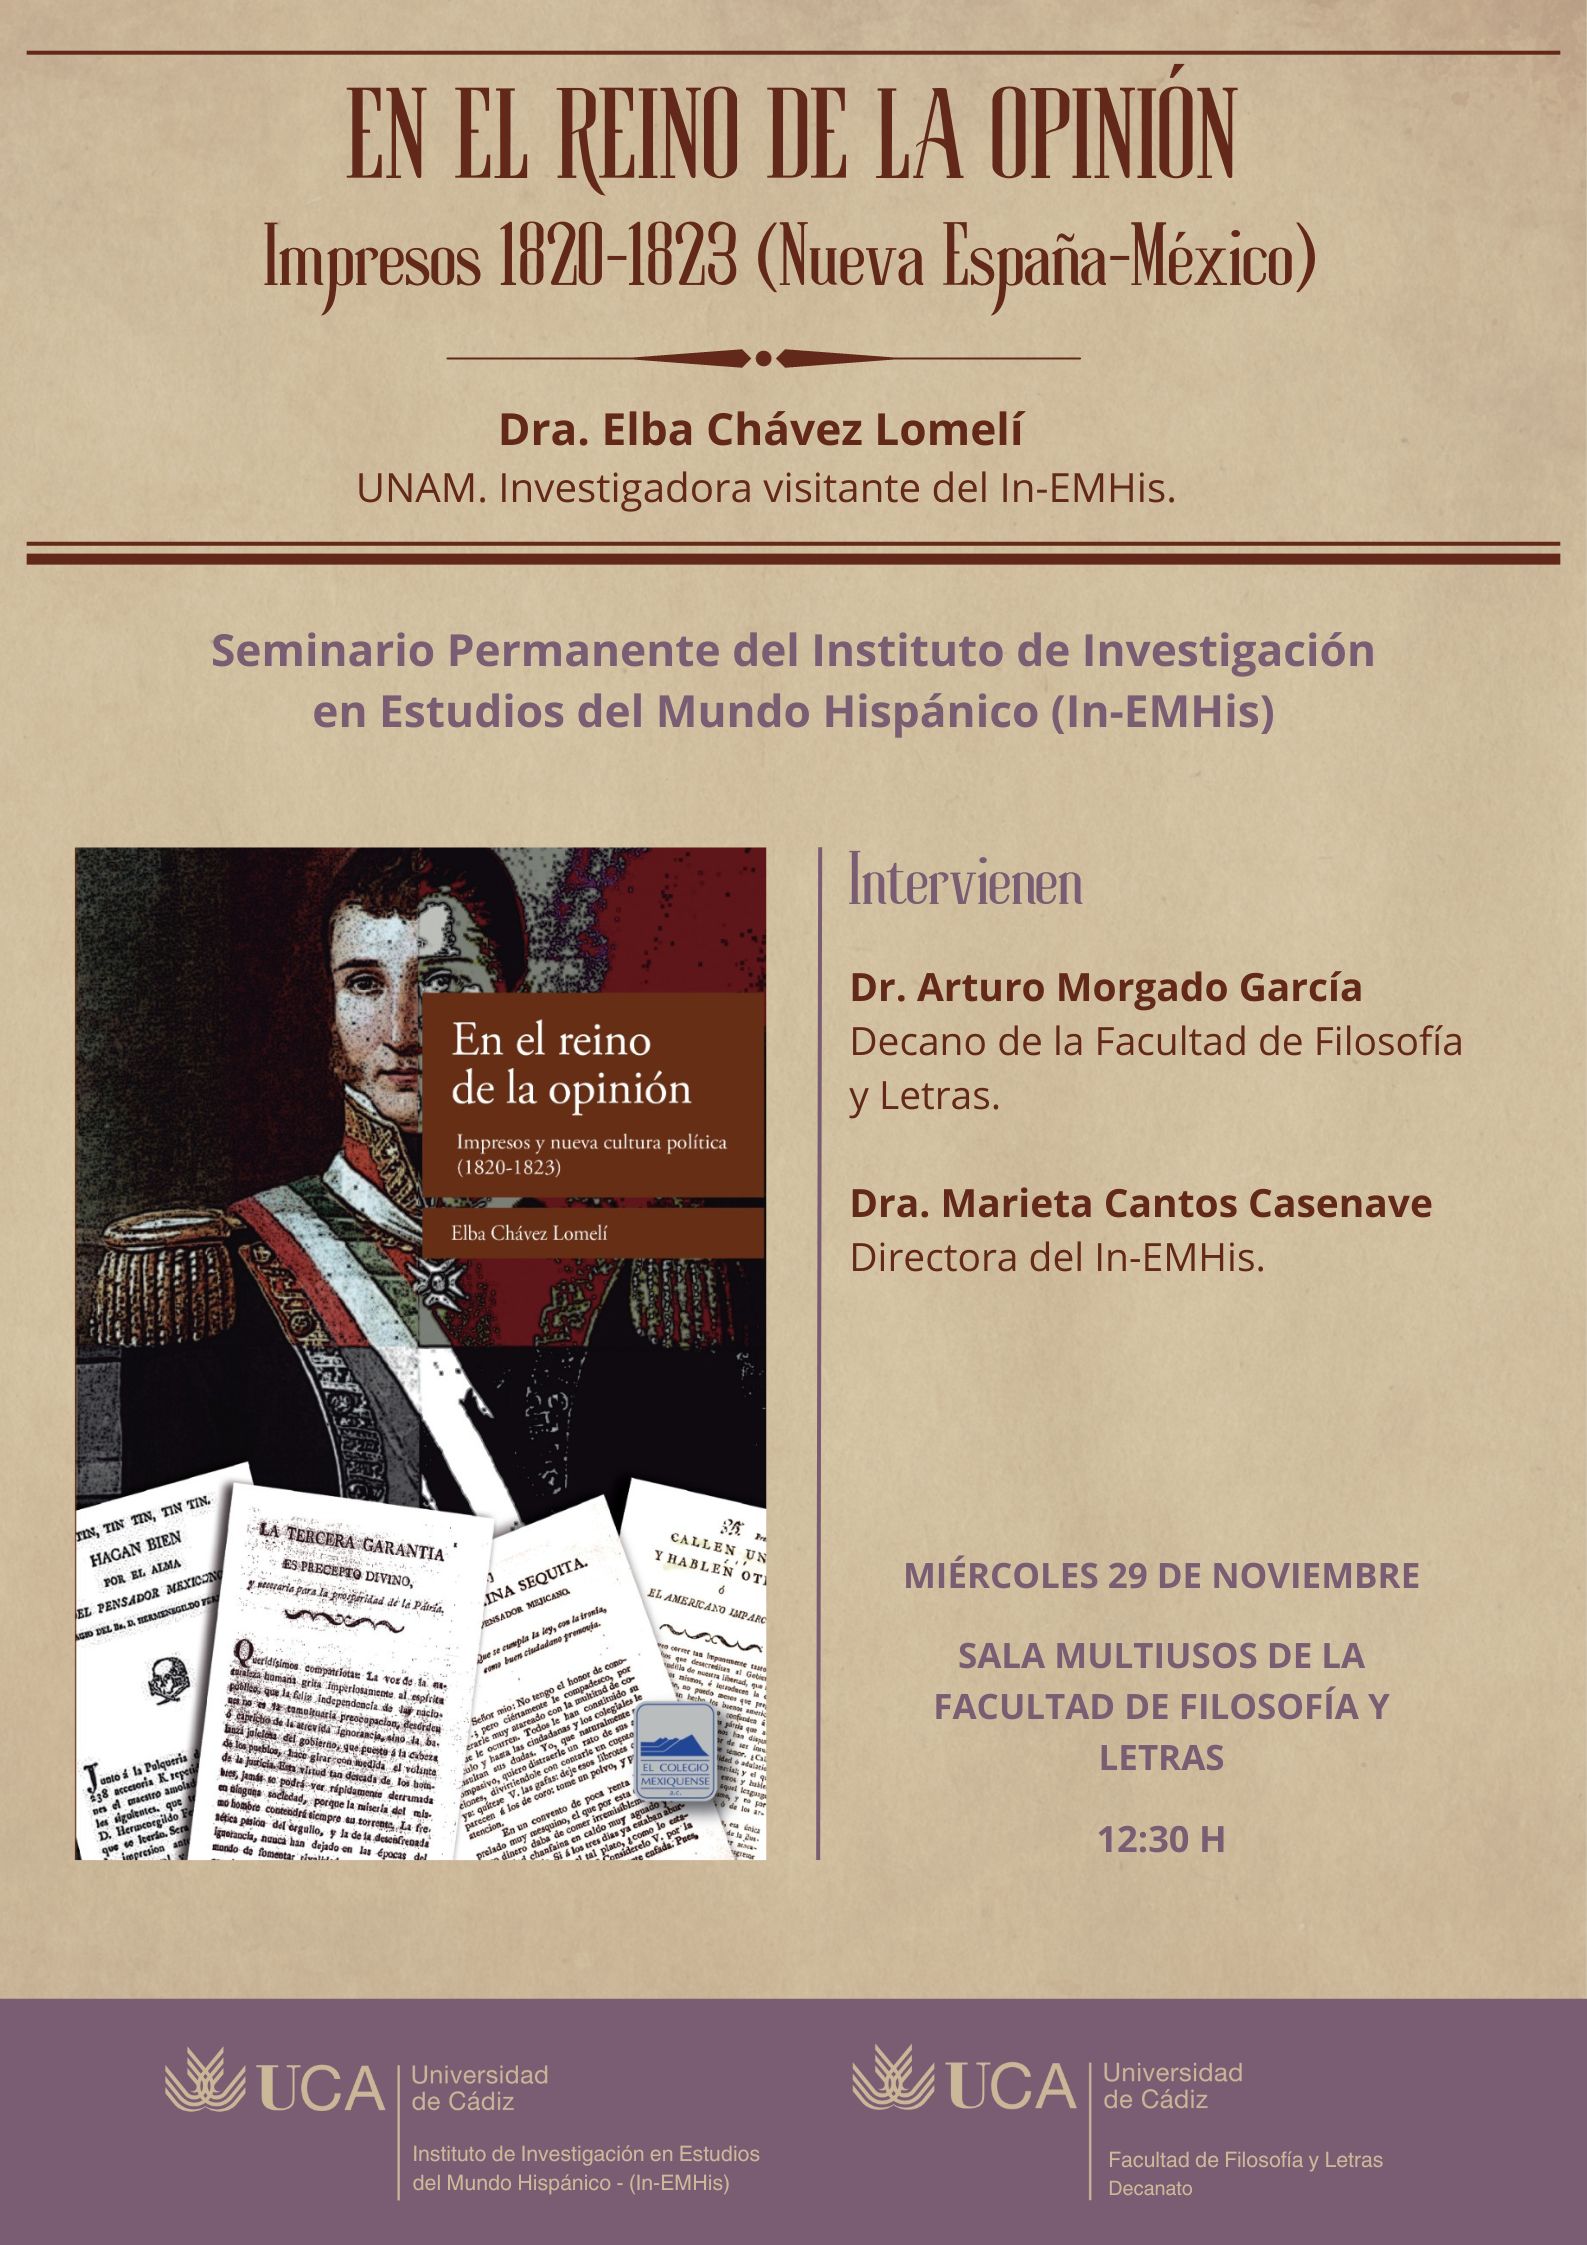 El próximo miércoles 29 de noviembre tendrá lugar la conferencia de la Dra. Elba Chávez Lomelí (UNAM) titulada “En el reino de la opinión. Impresos 1820-1823 (Nueva España-México)”